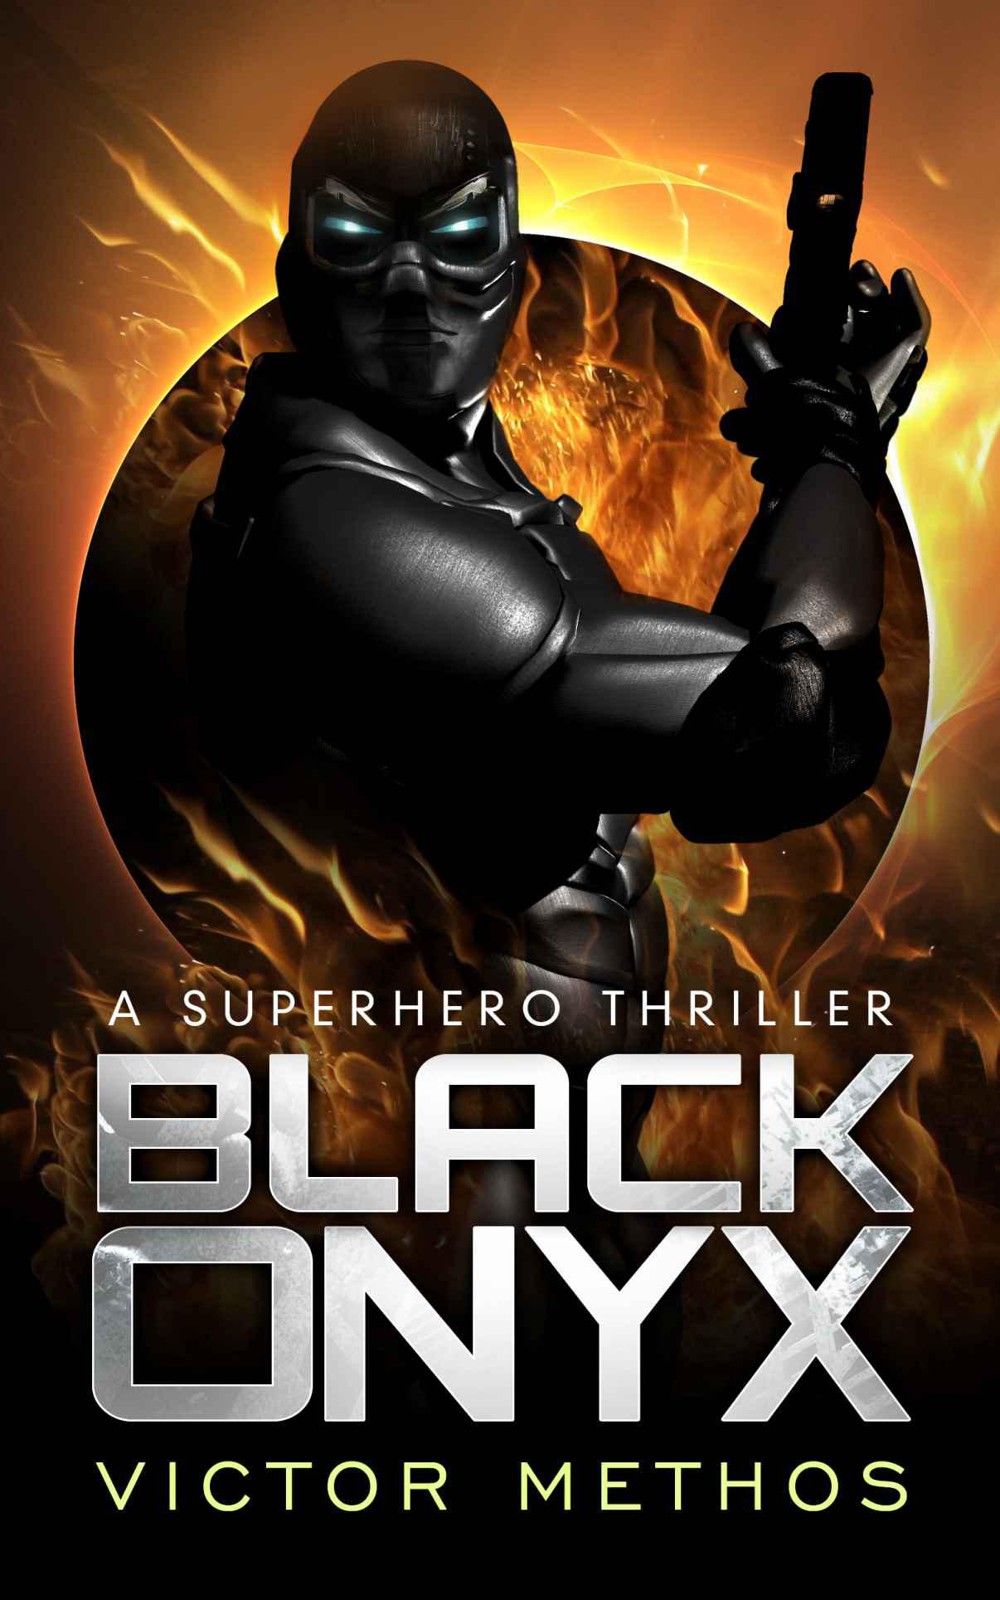 Black Onyx by Victor Methos